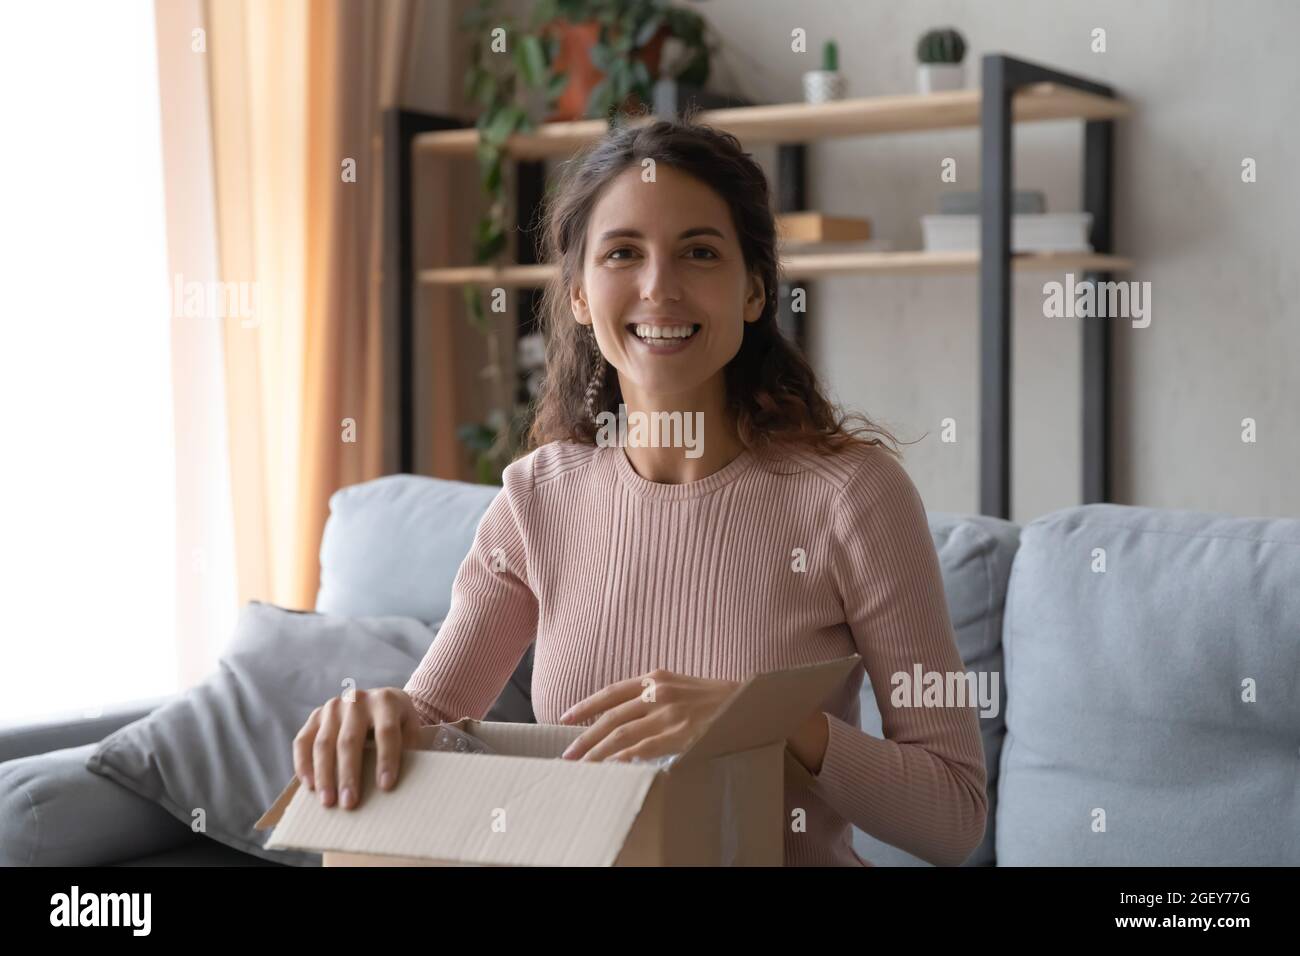 Frau, die den Paketkasten hält, fühlt sich mit den bestellten Waren zufrieden Stockfoto